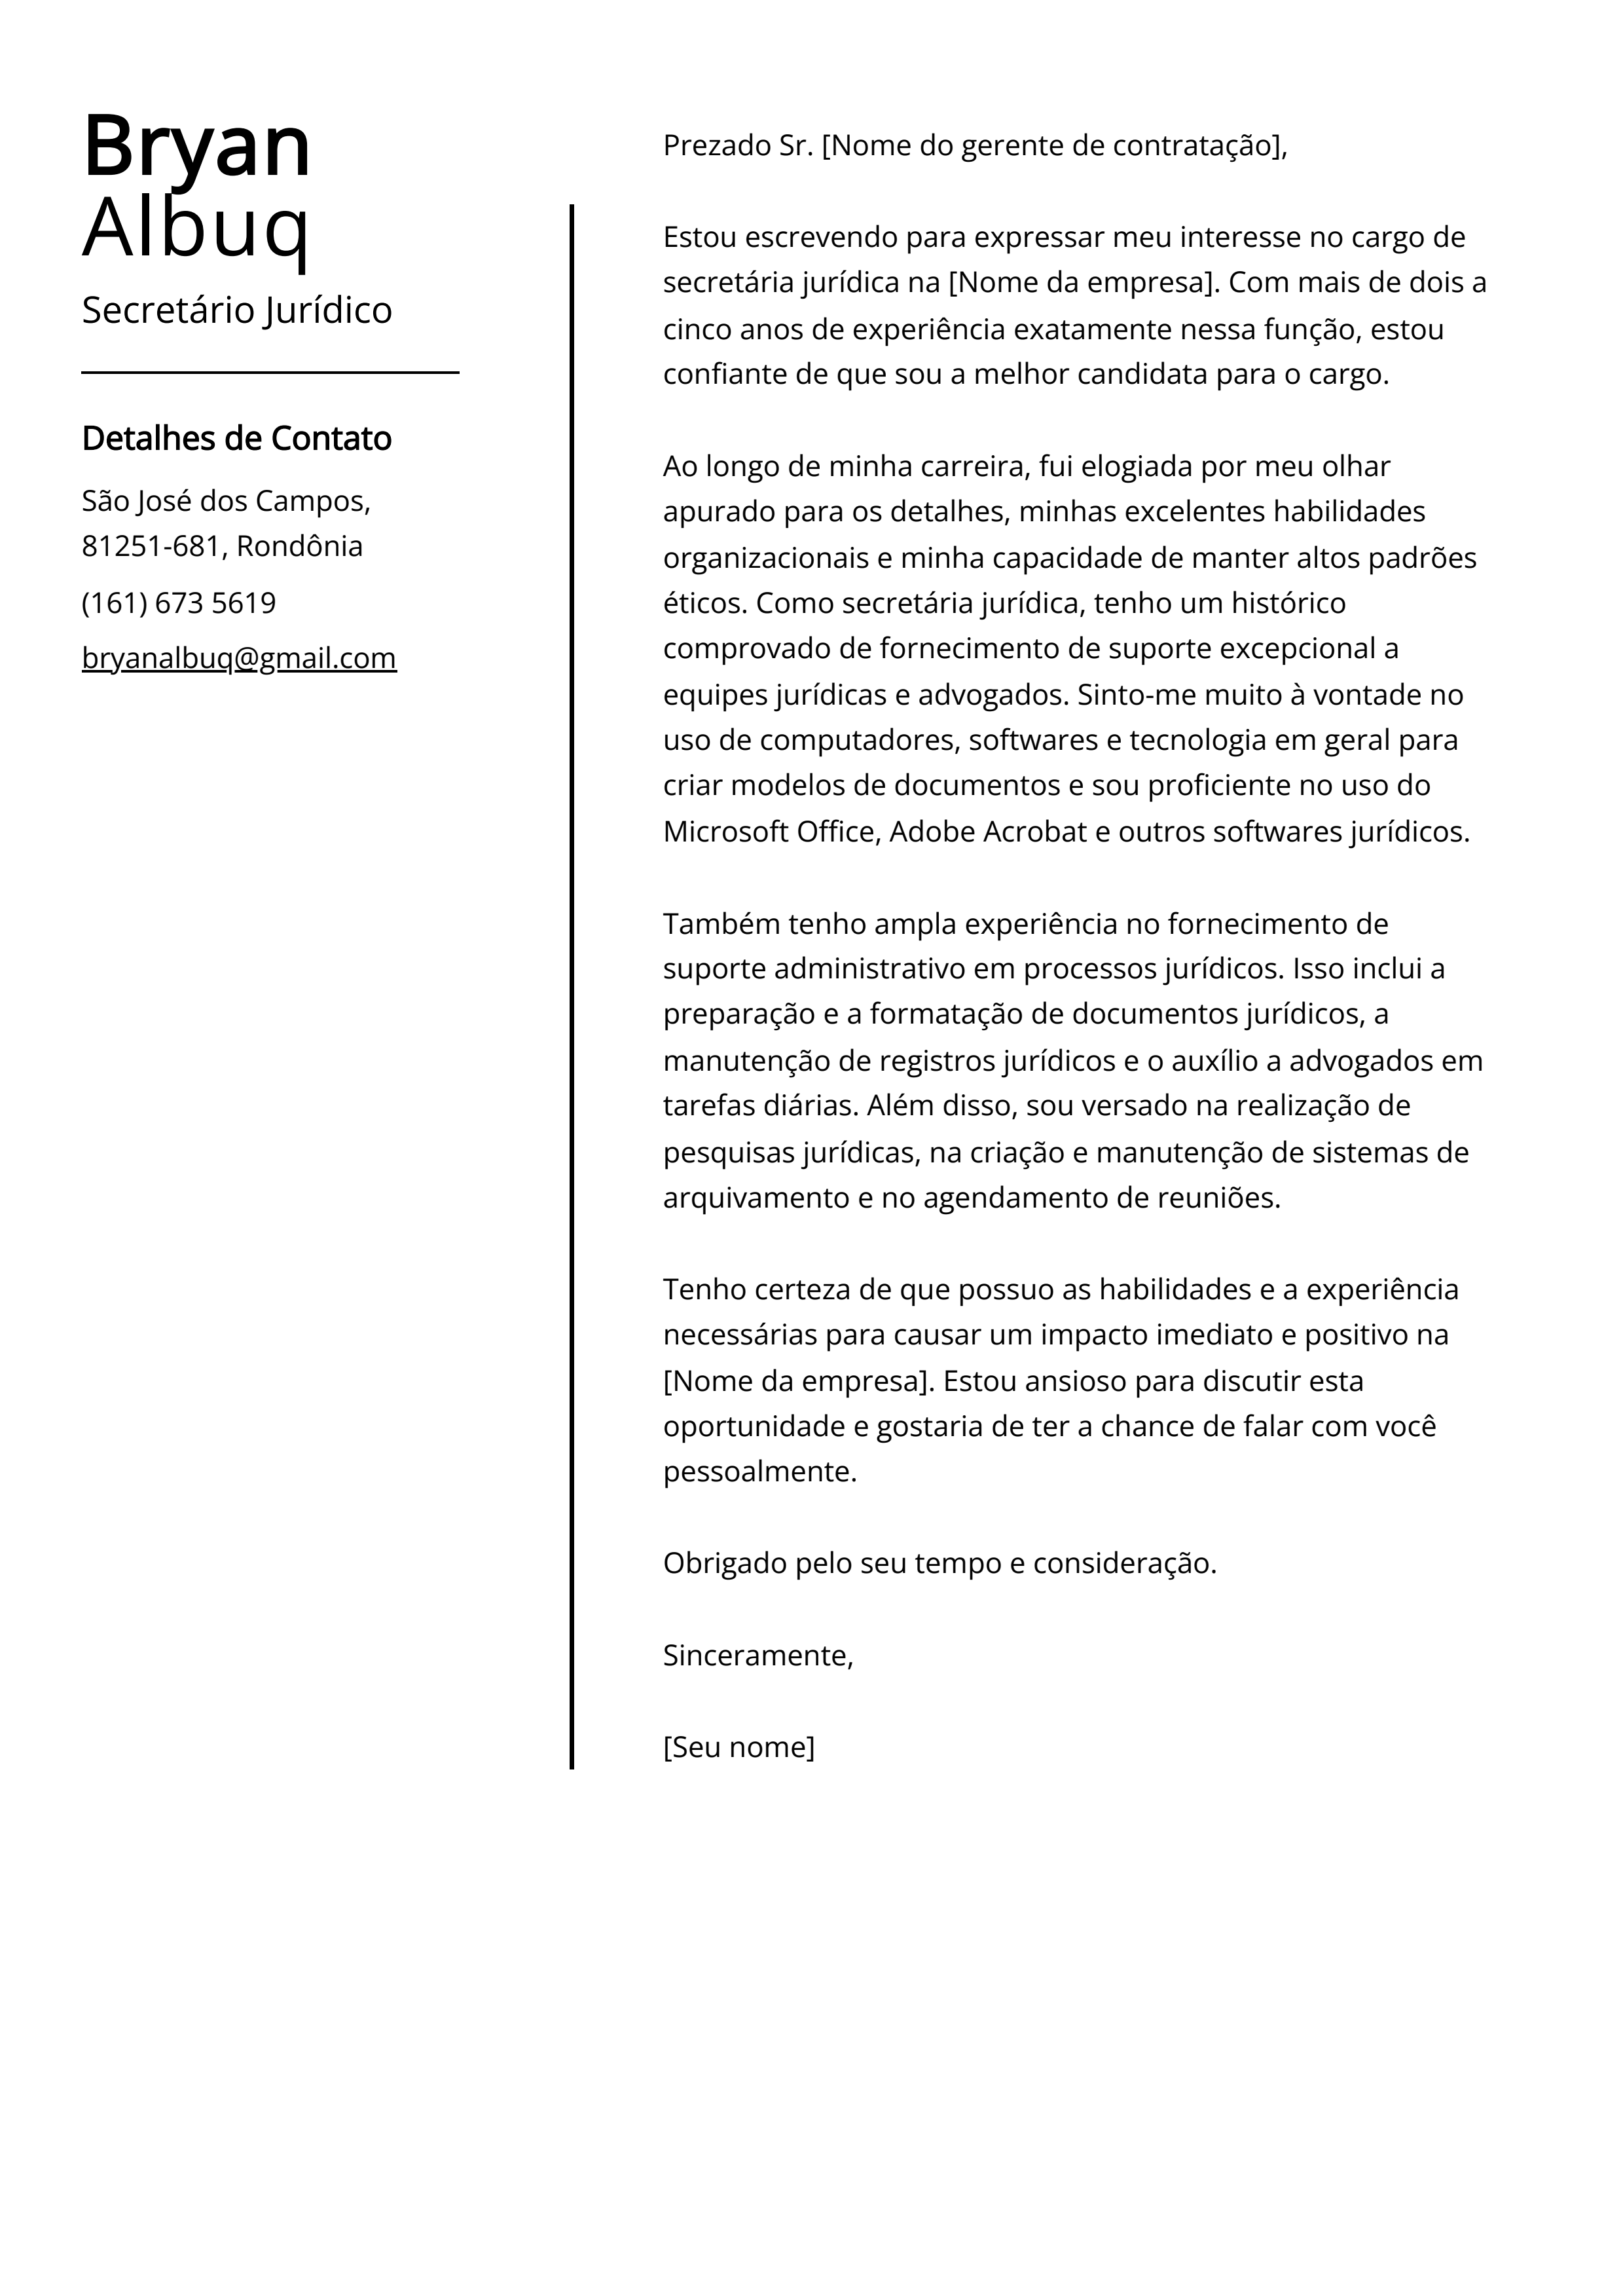 Exemplo de carta de apresentação do Secretário Jurídico